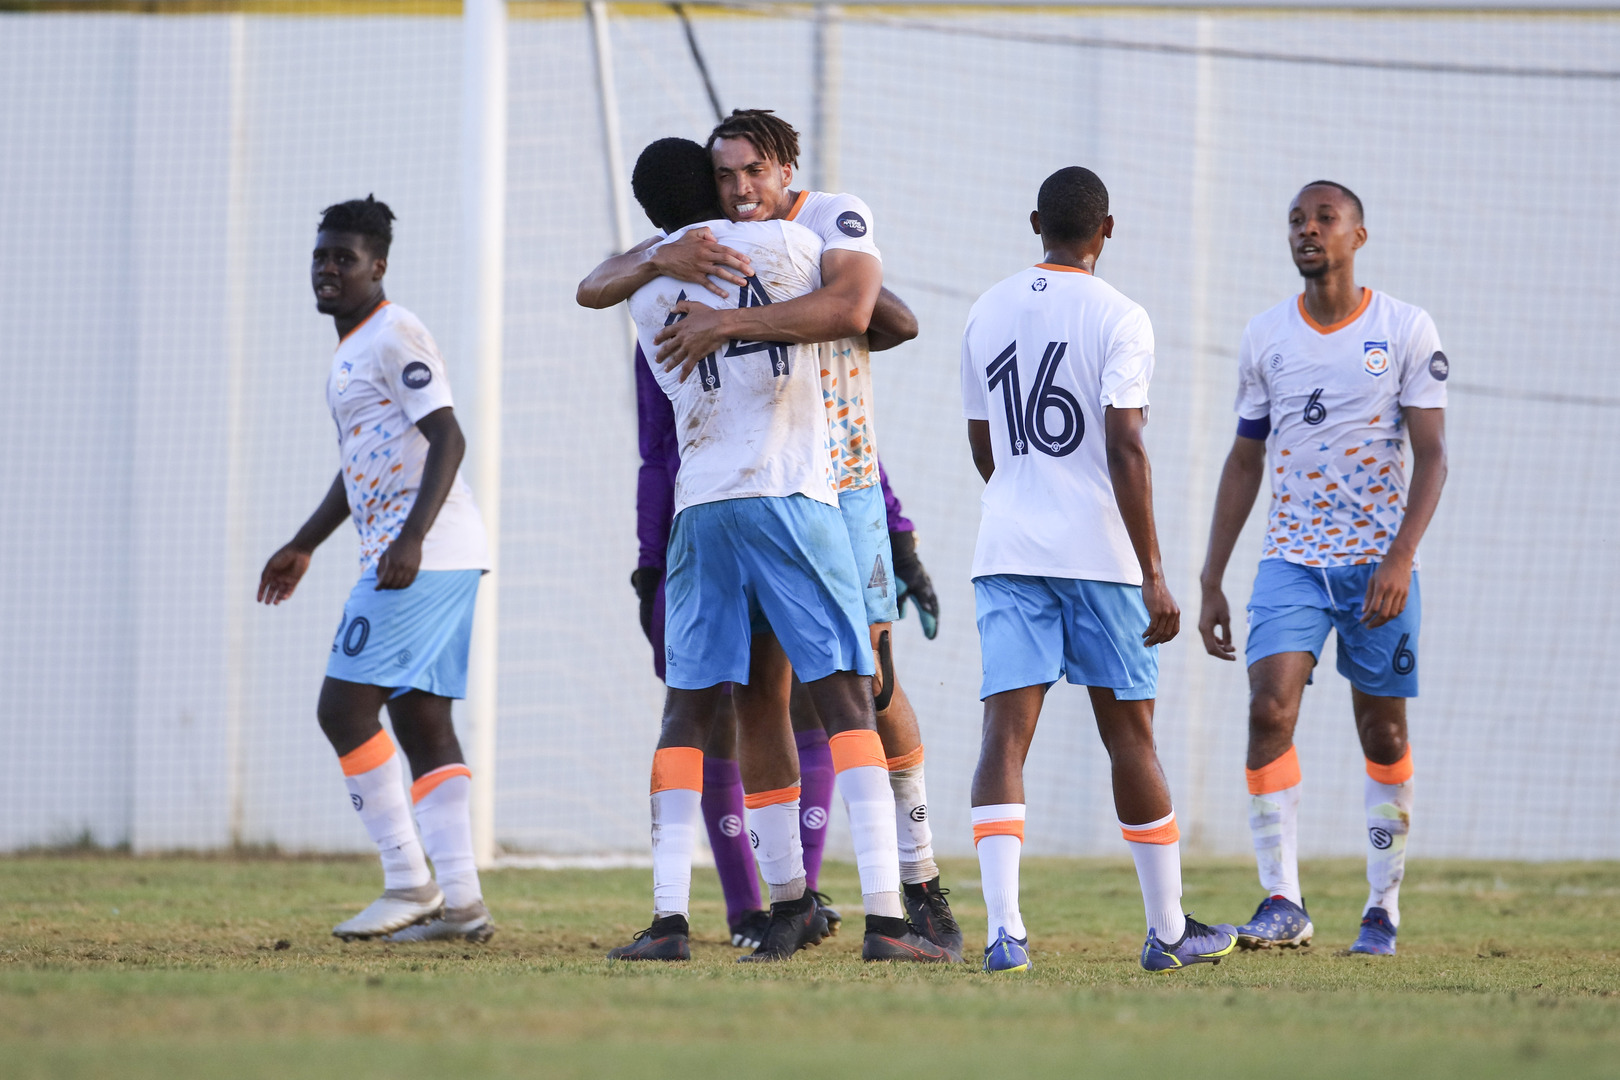 Anguilla-Saint Martin, USVI-Cayman Islands start League C